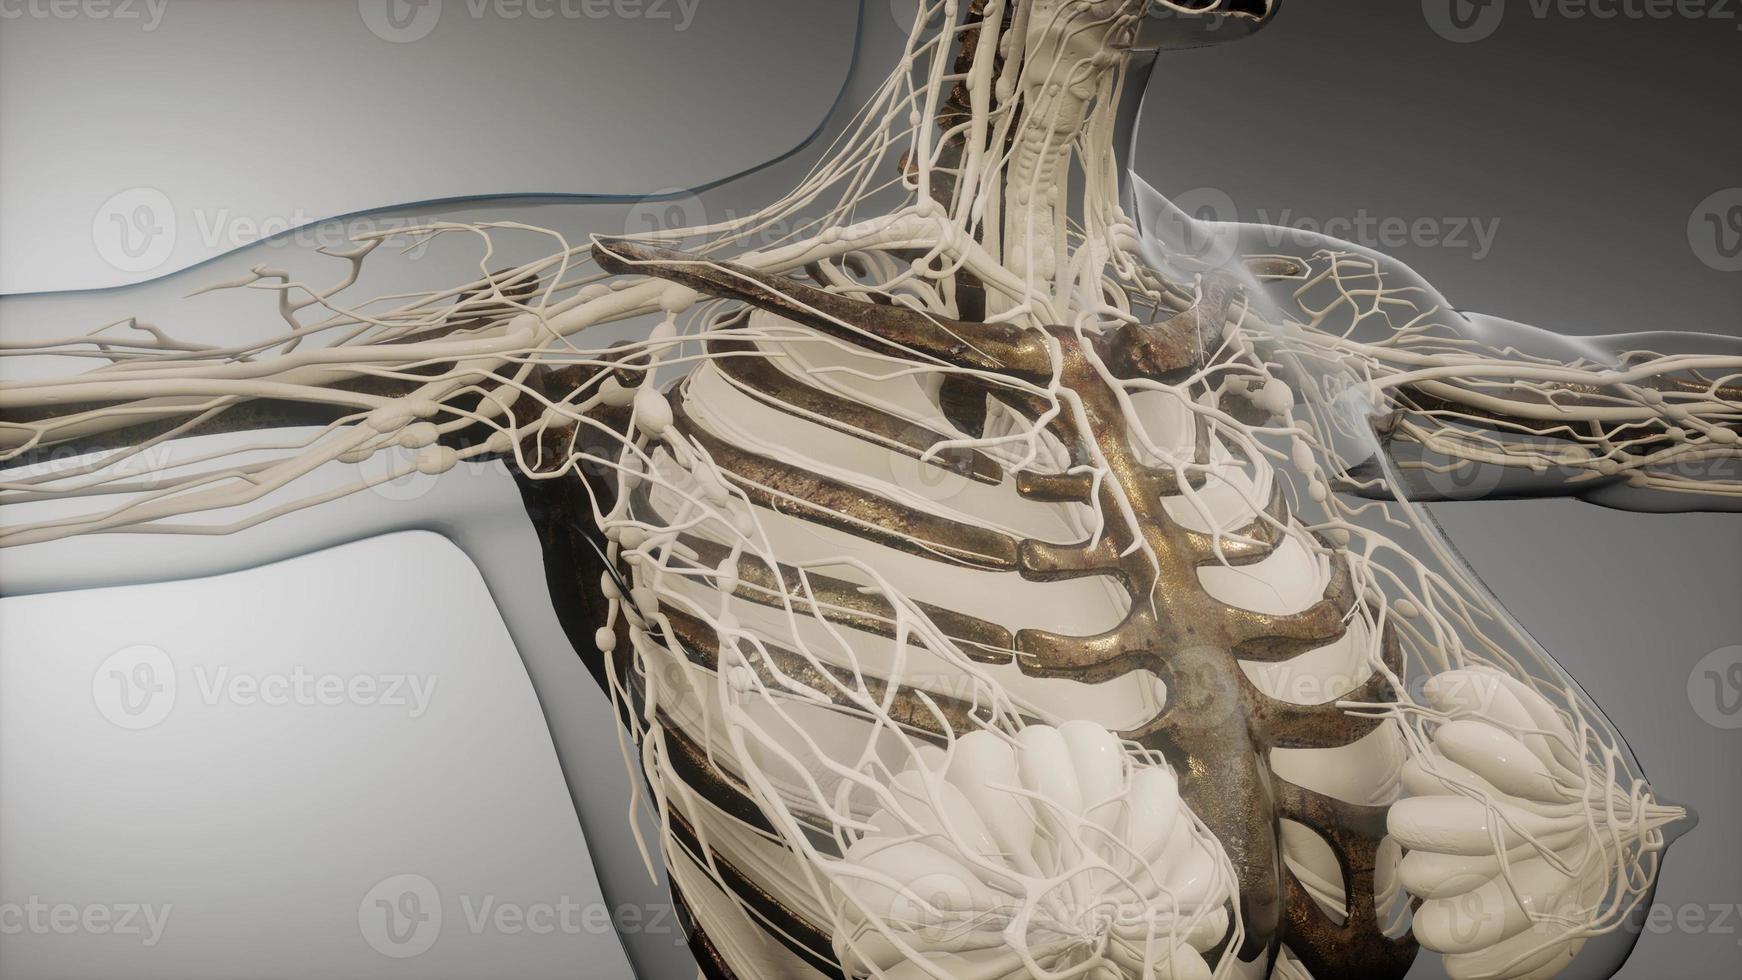 corpo humano transparente com ossos visíveis foto